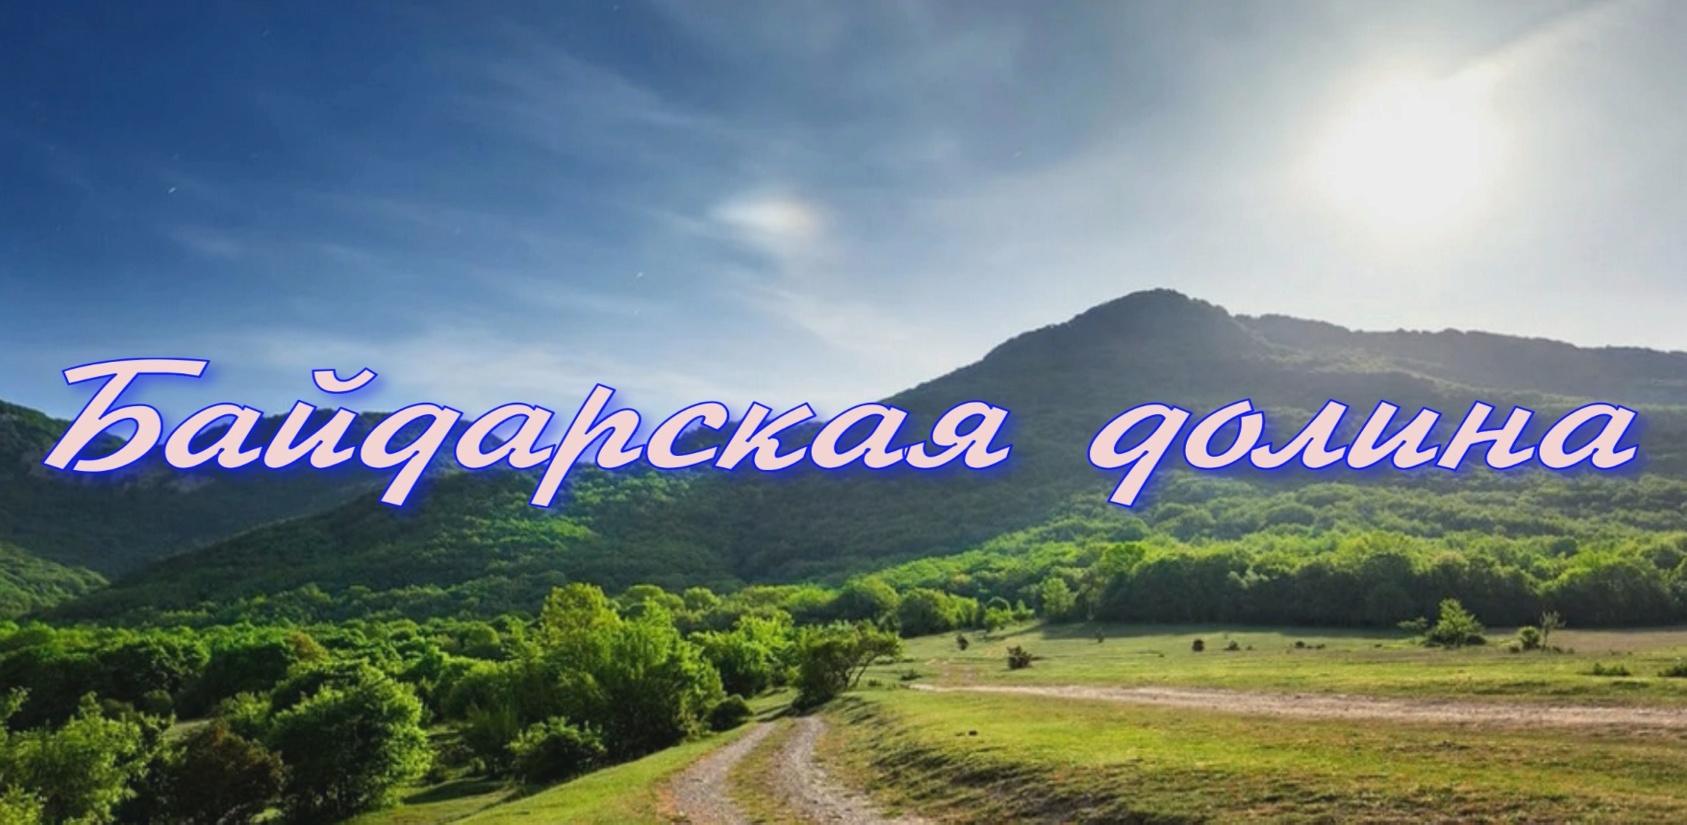 Байдарская долина в Крыму - уголок уникальной природы